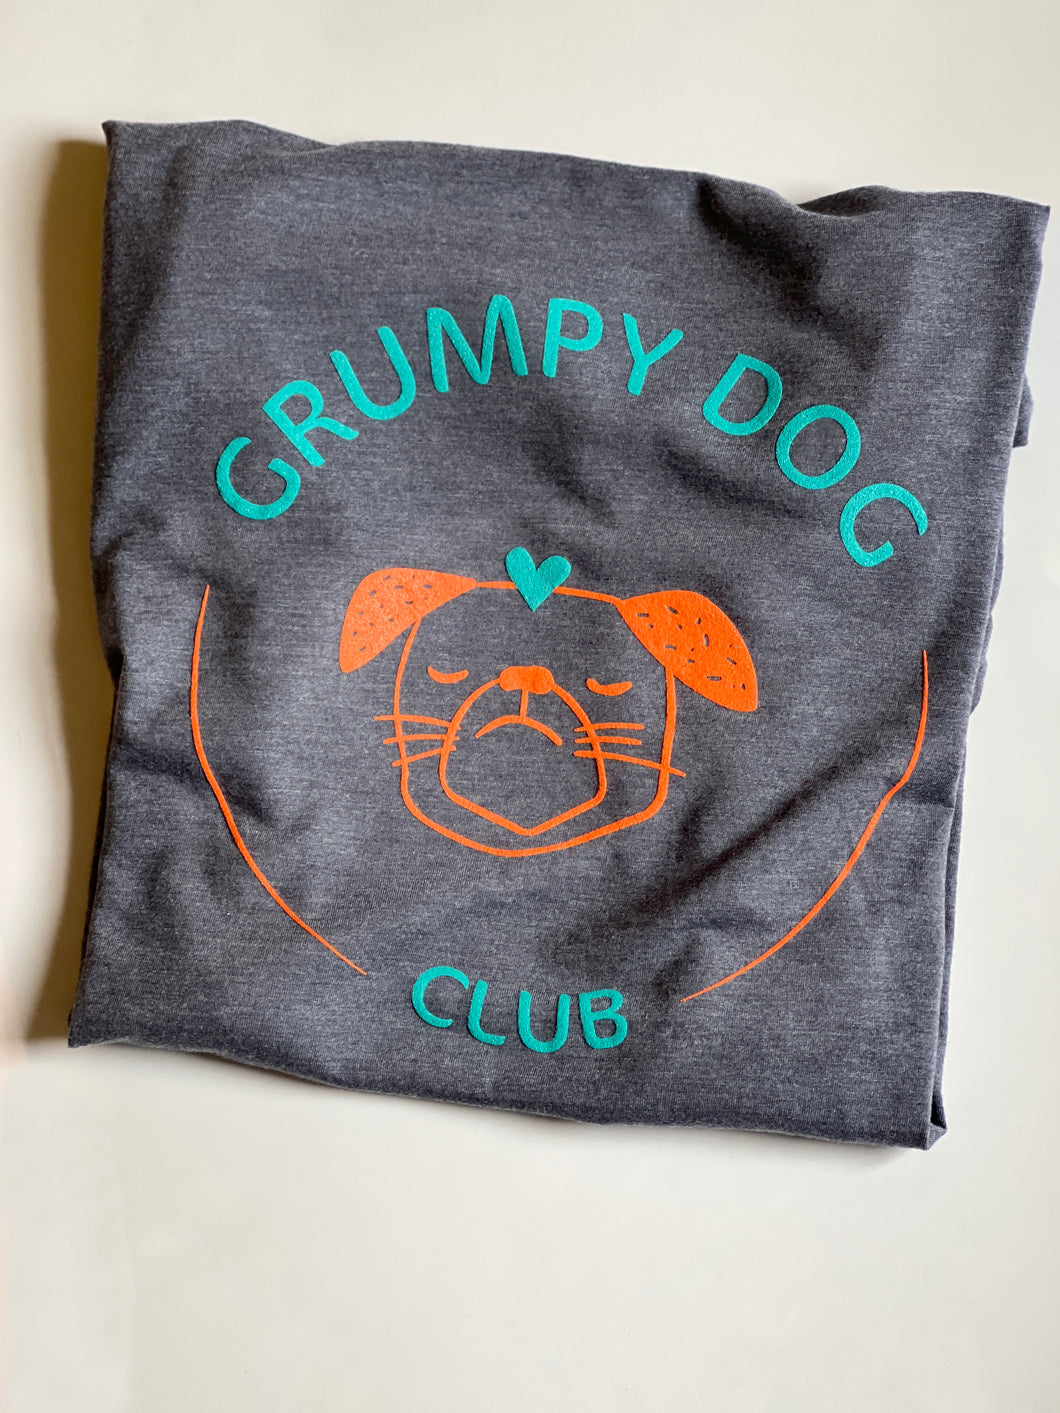 Grumpy Dog Club Unisex T-Shirt